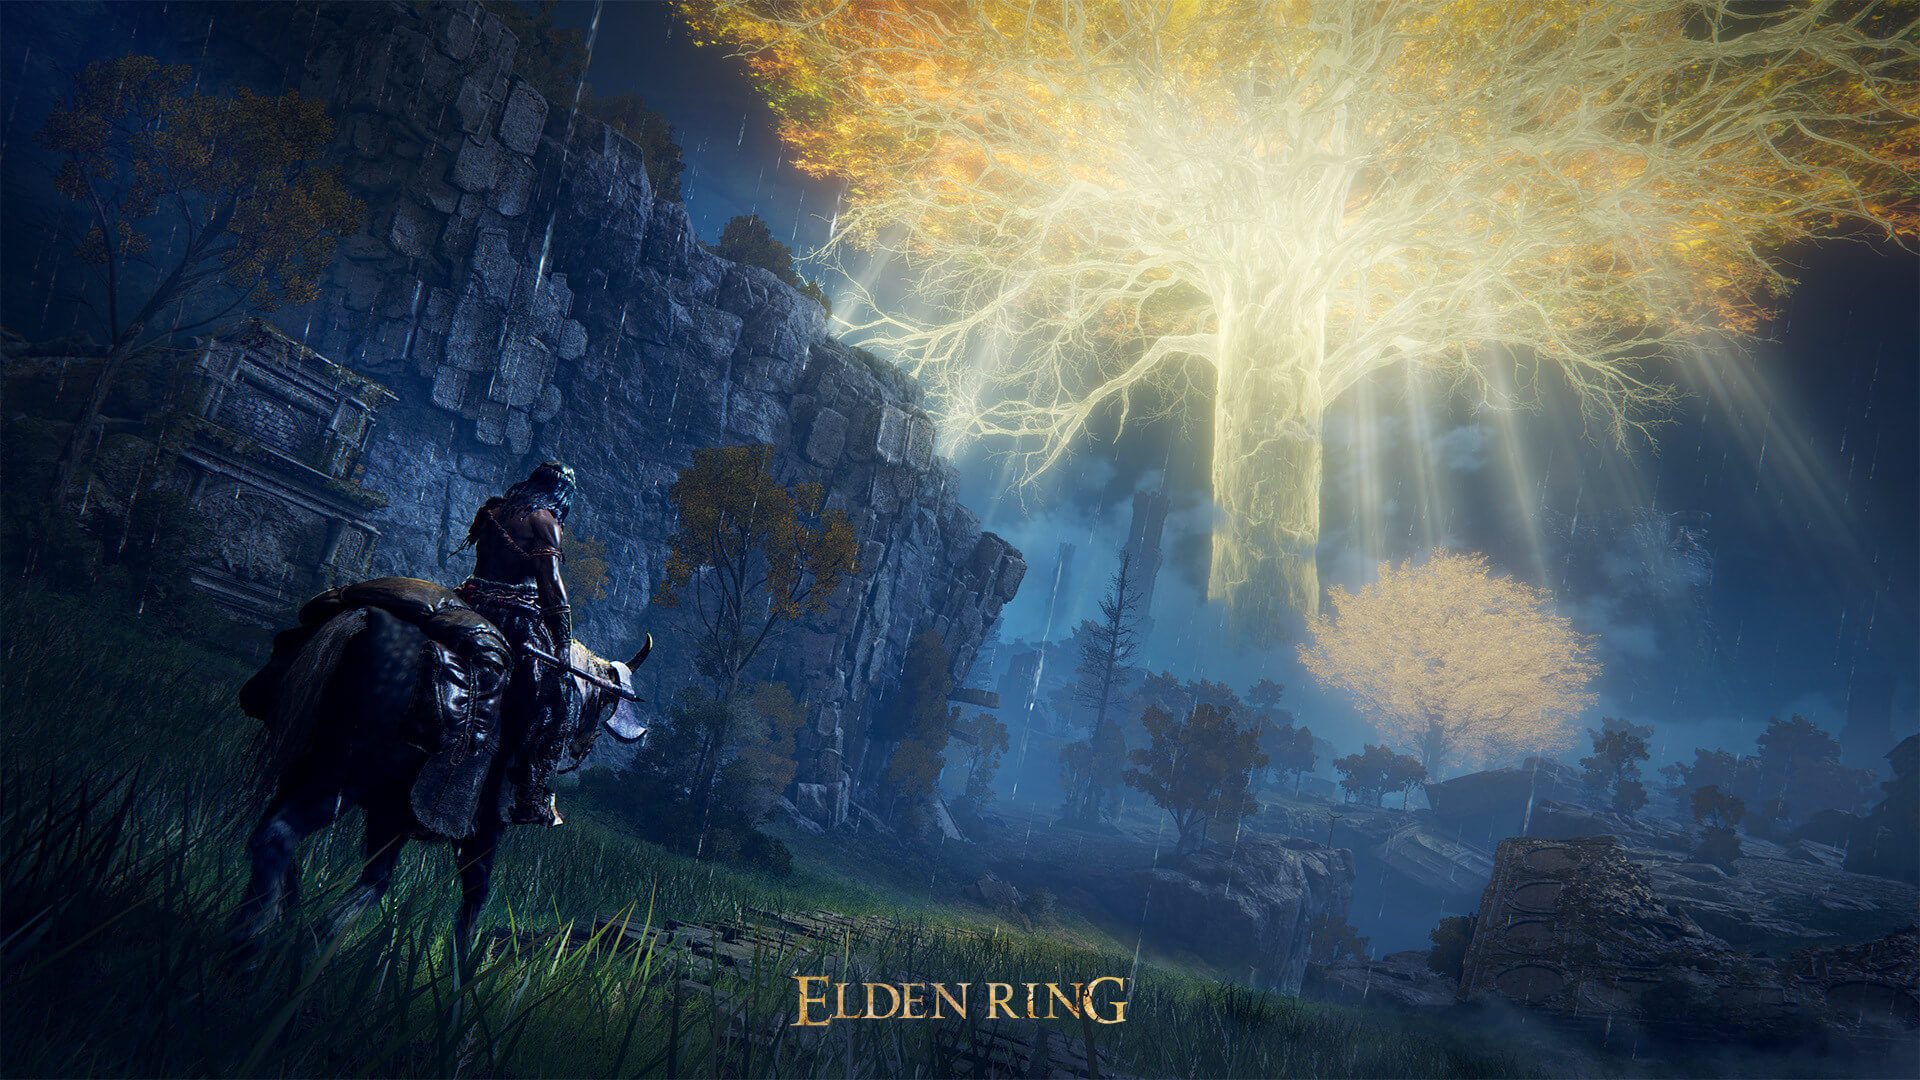 Elden Ring has sold over 12 million copies